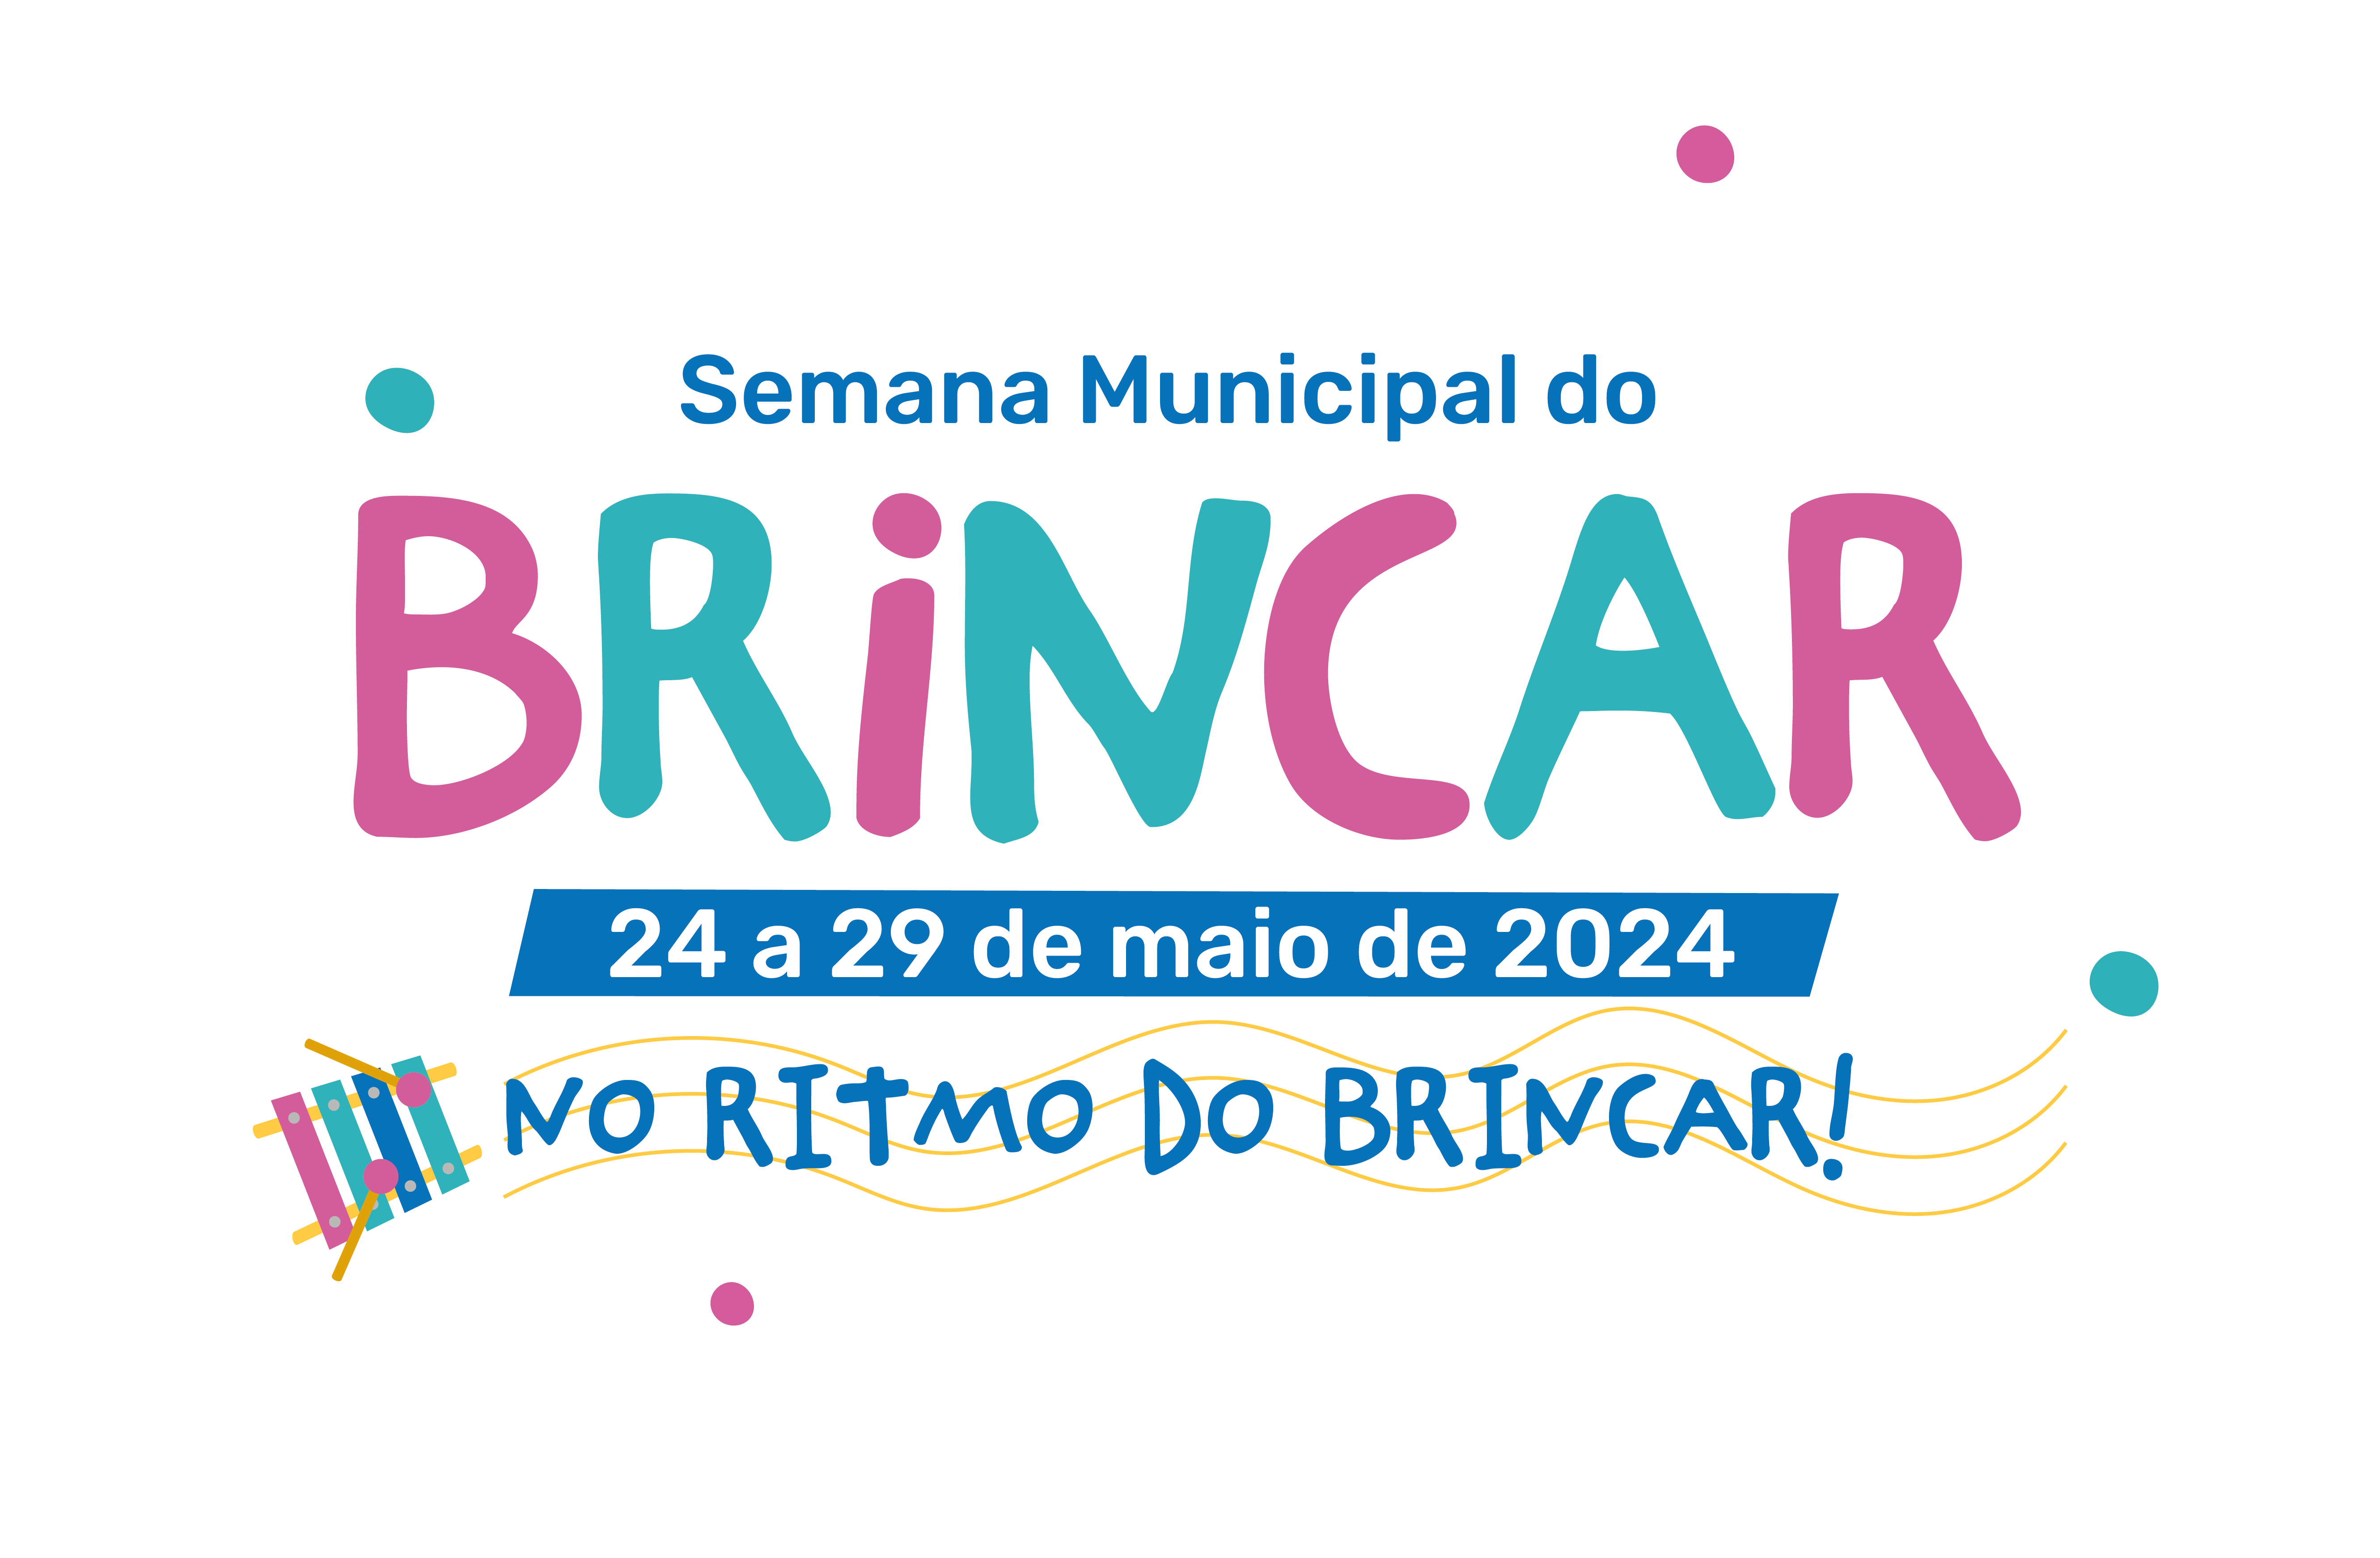 A logomarca traz o texto "Semana Municipal do Brincar - 24 a 29 de maio de 2024 - No ritmo do brincar!" em letras coloridas; ao lado, está o desenho de um xilofone infantil 